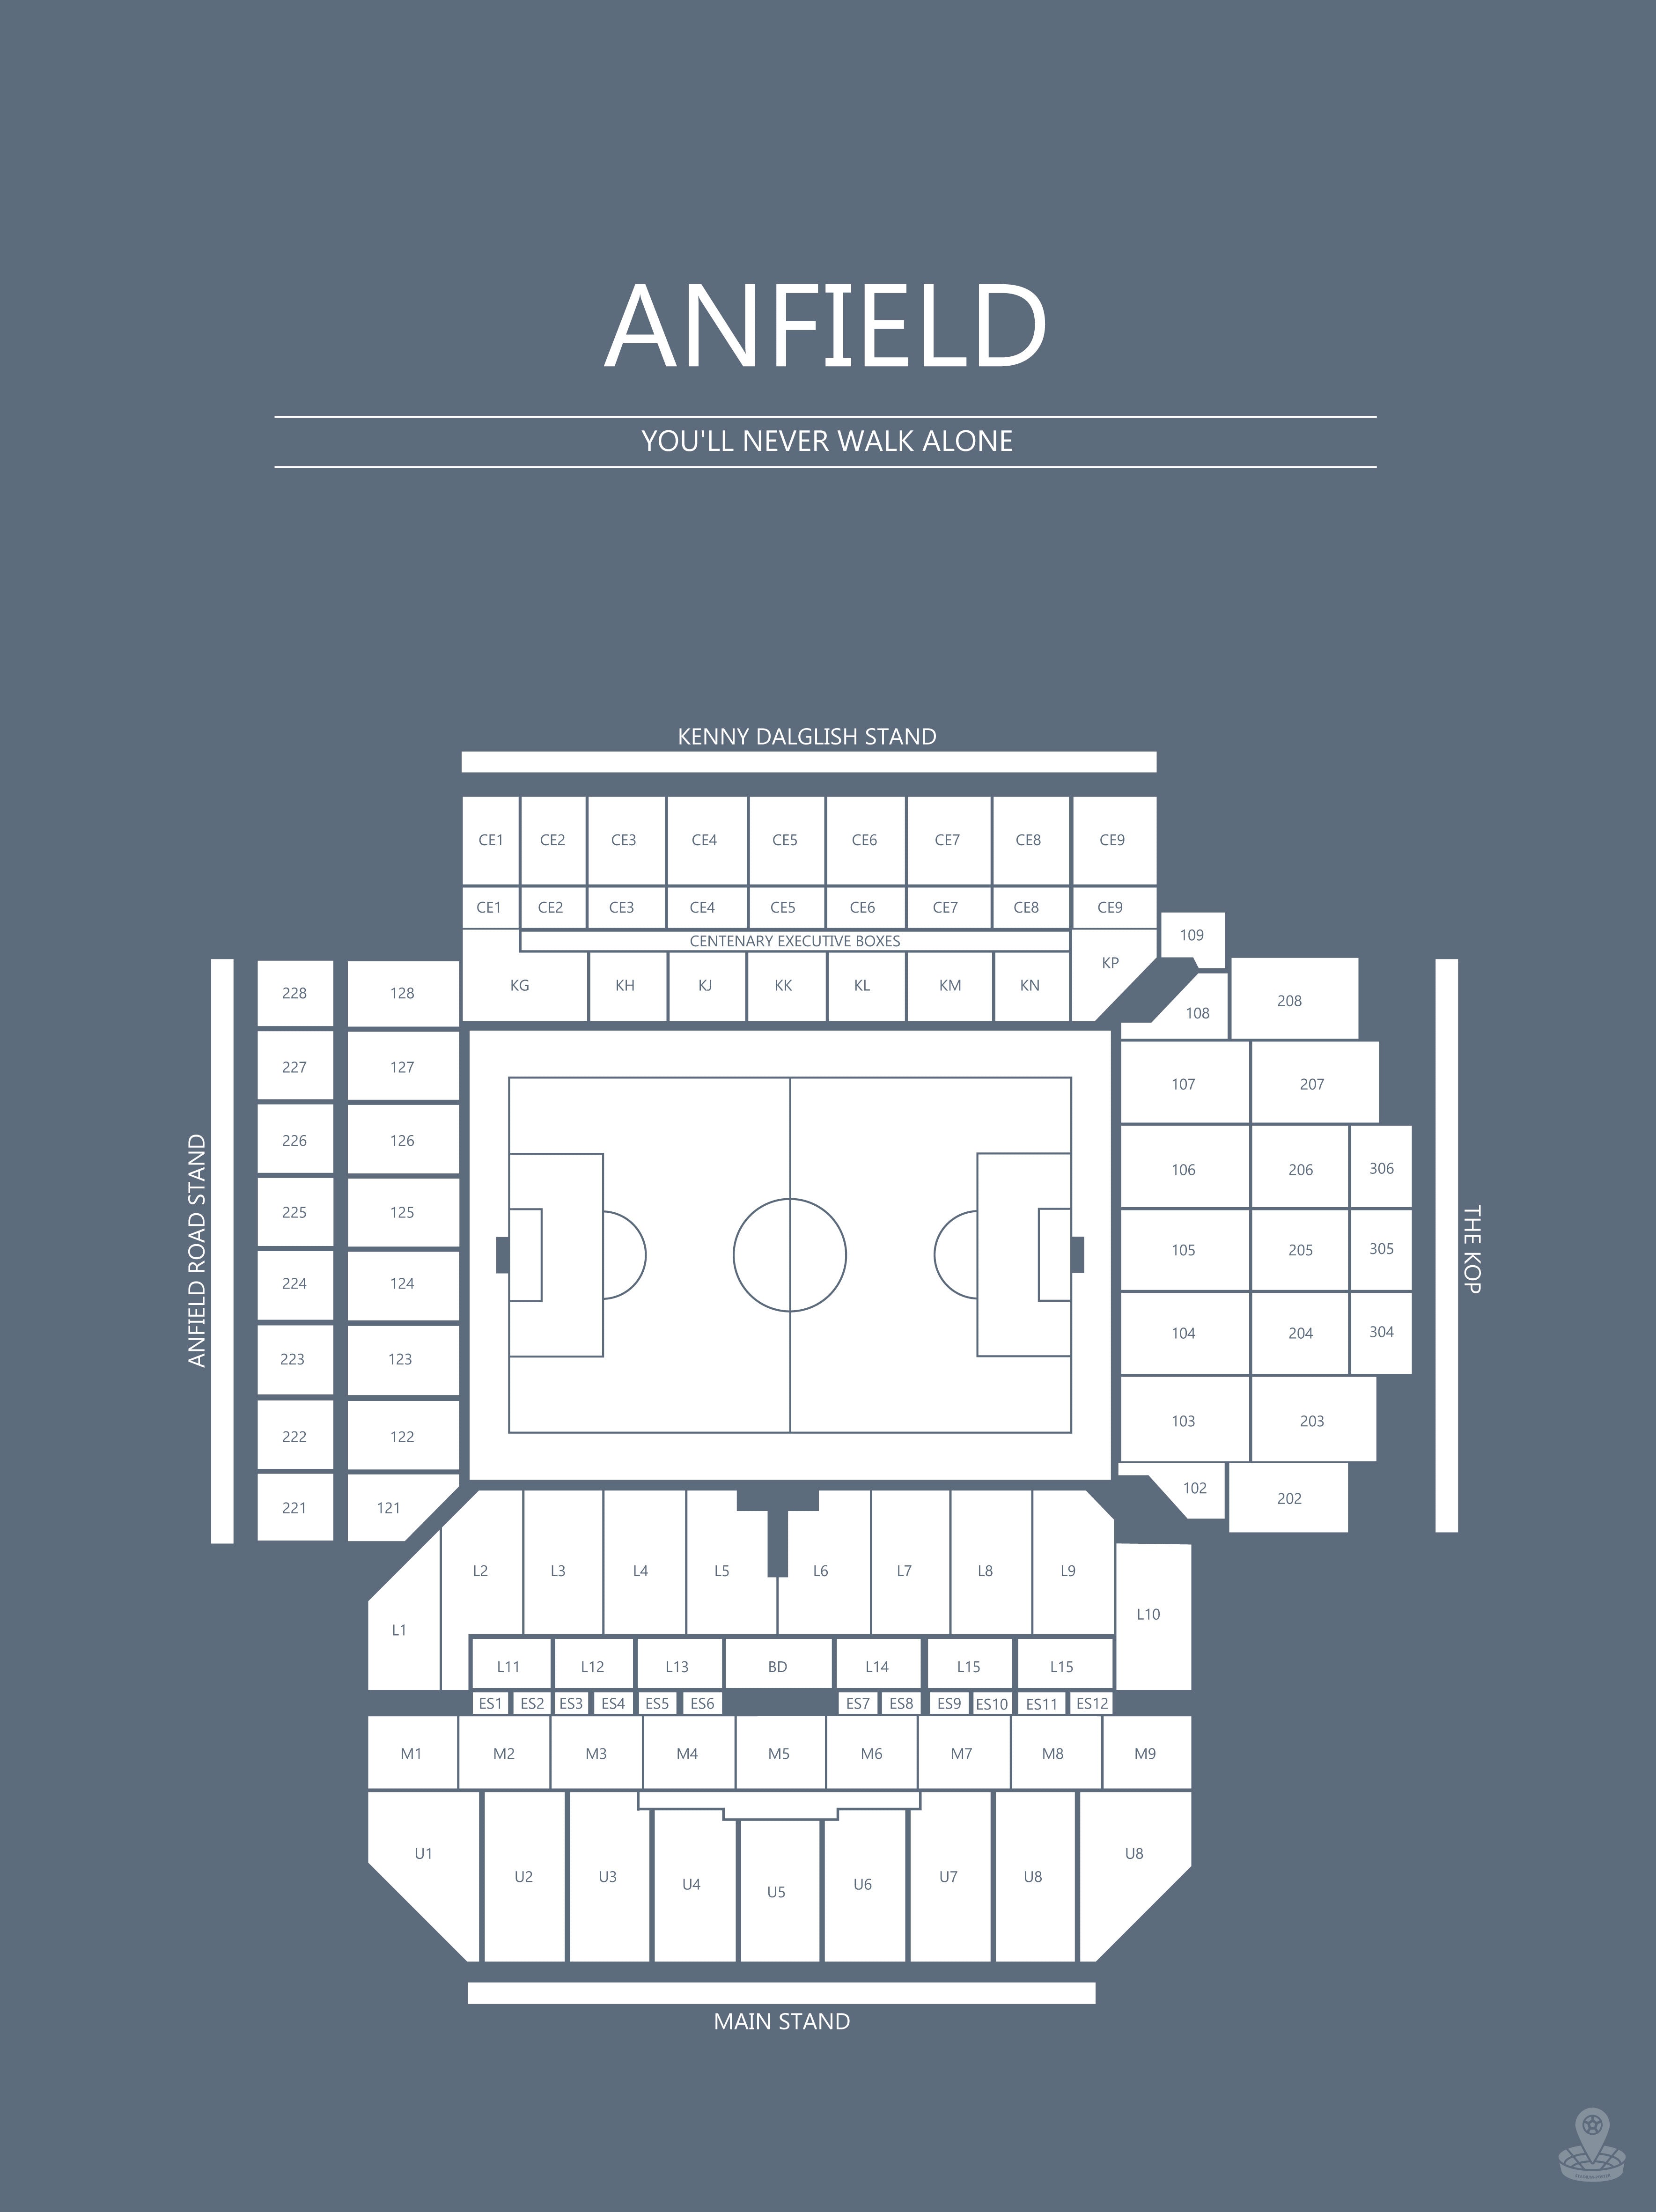 Fodbold plakat Liverpool Anfield stadium i blågrå